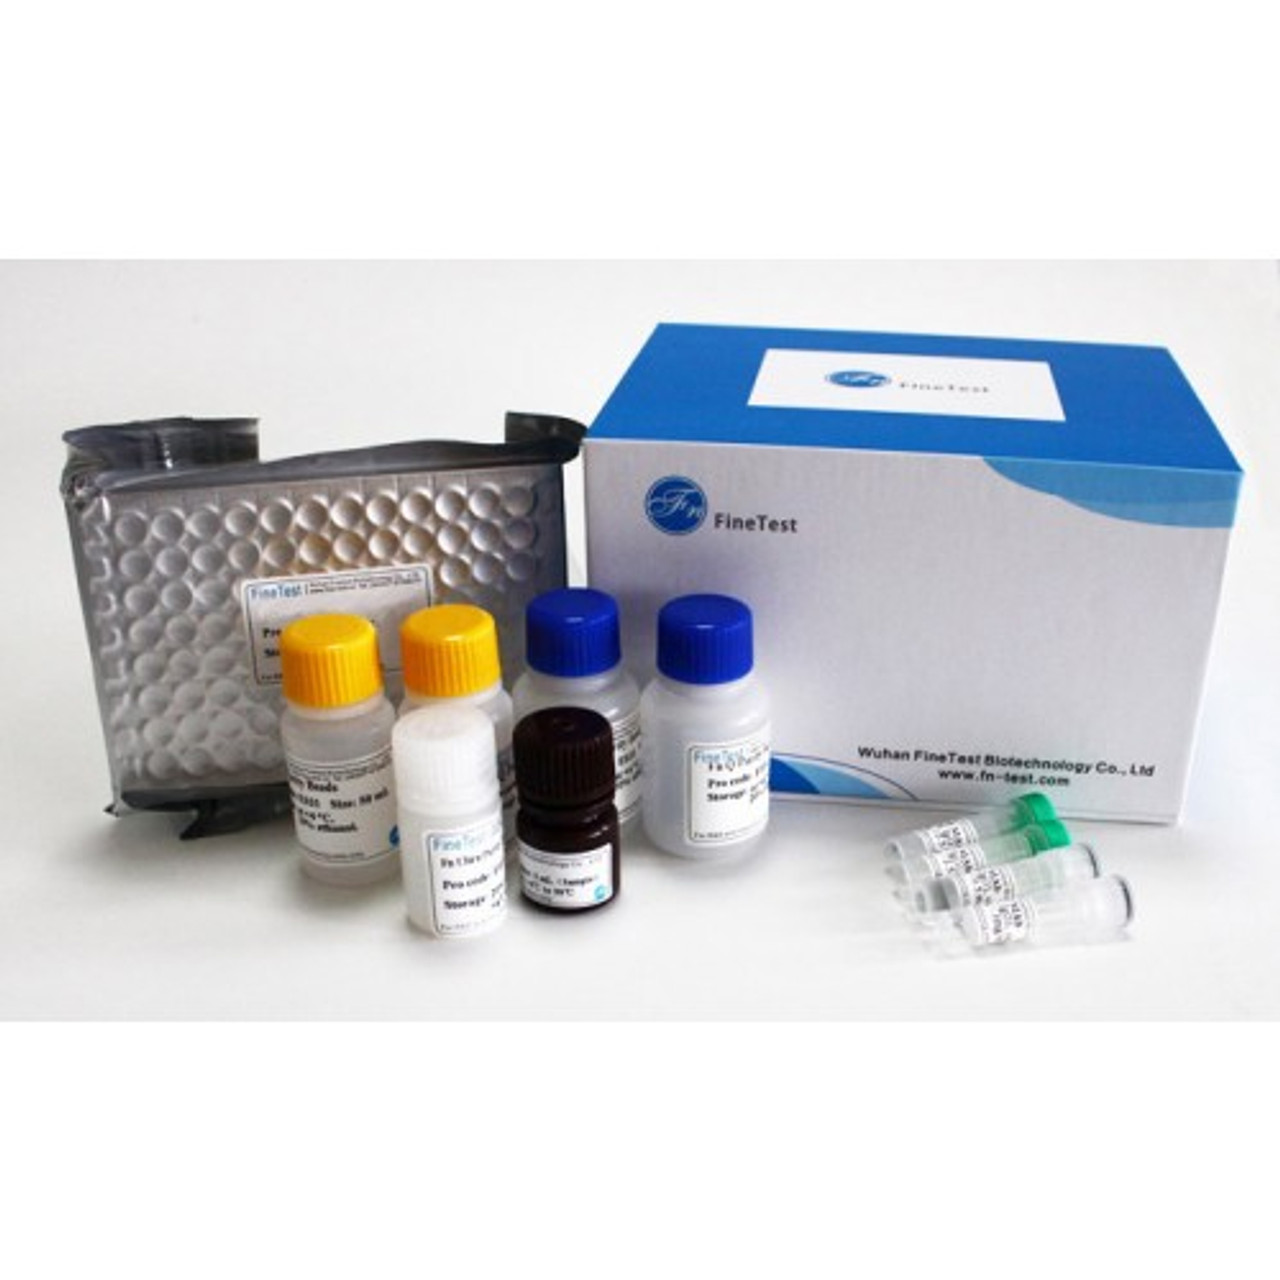 Sheep IgG(Immunoglobulin G) ELISA Kit